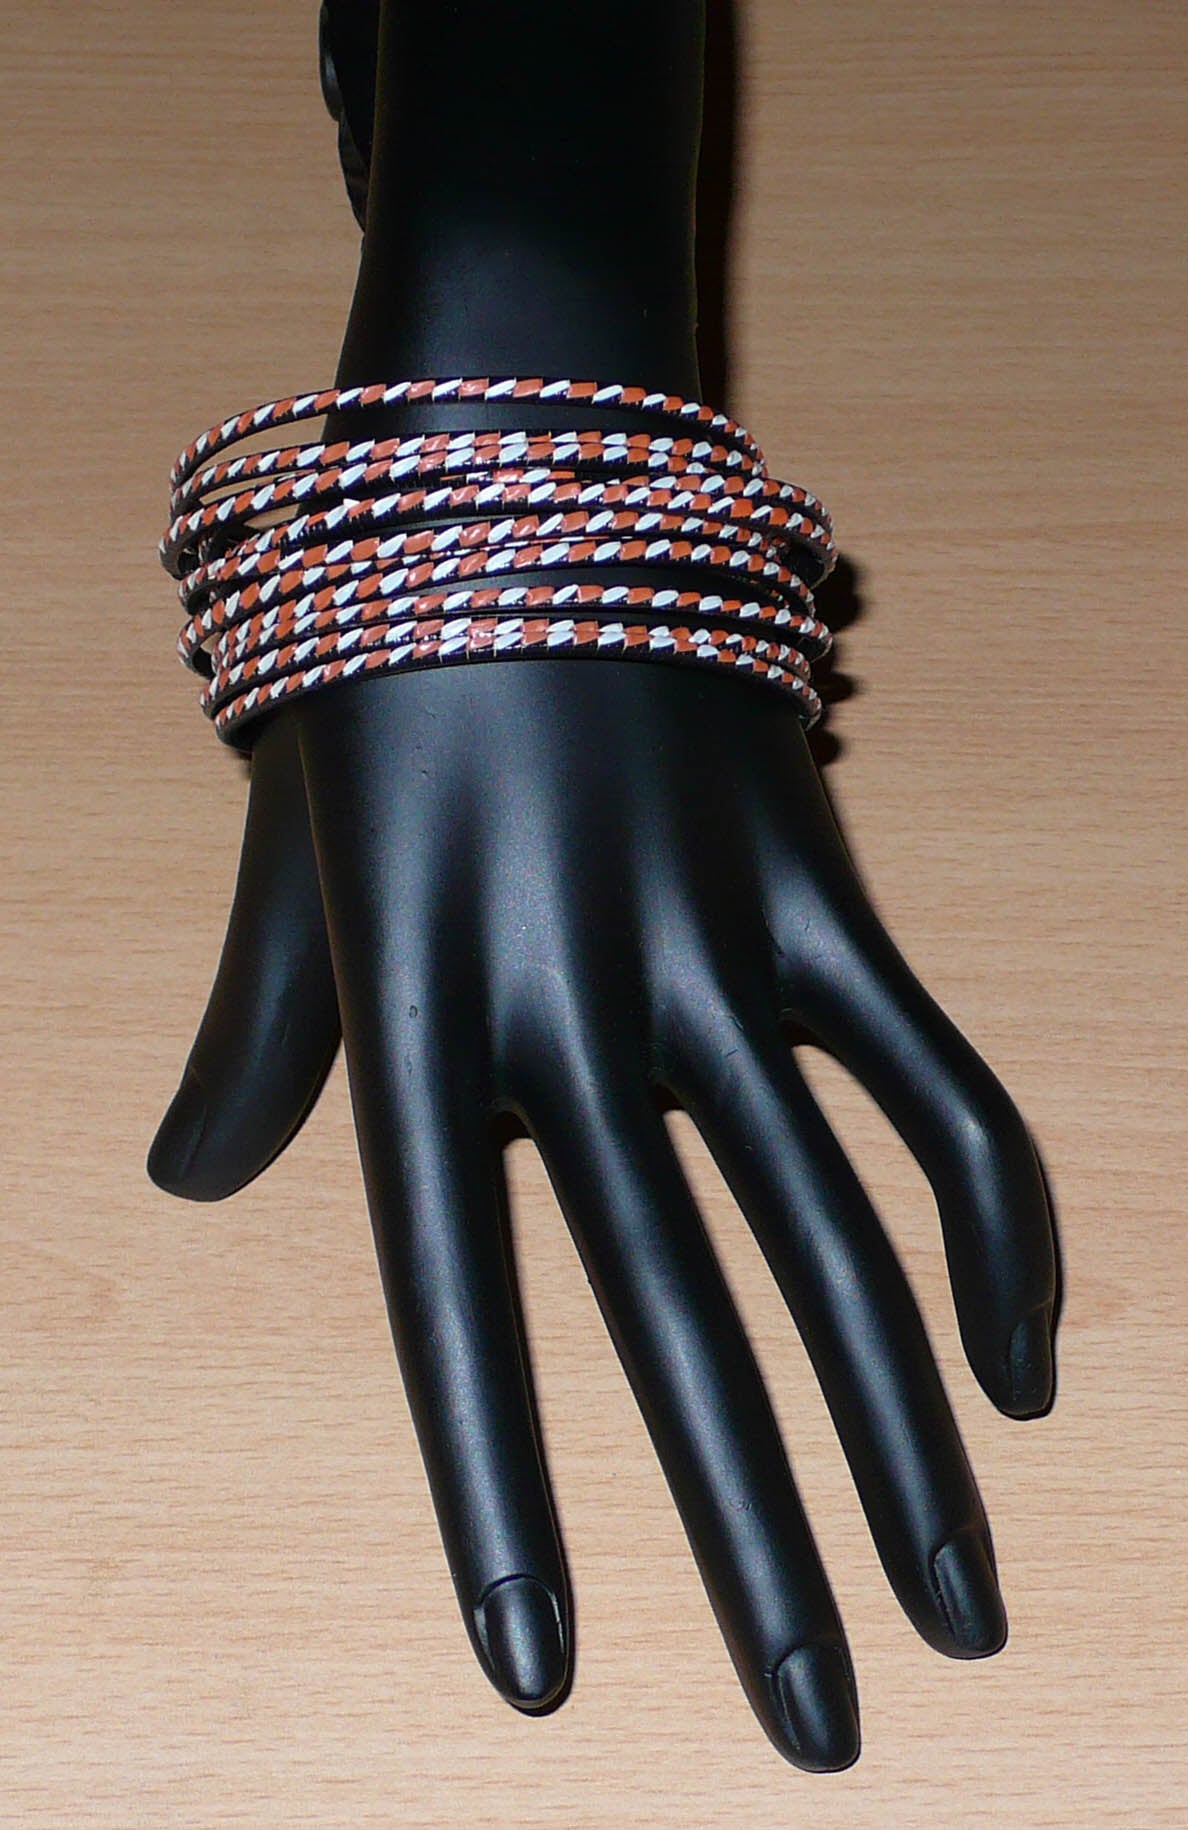 Ensemble de 12 bracelets africains tricolores tressés à partir de plastique recyclé orange, blanc et noir.  Très fins, ces bracelets ont une circonférence de 21 cm, un diamètre de 6,8 cm et une épaisseur de 0,3 cm.